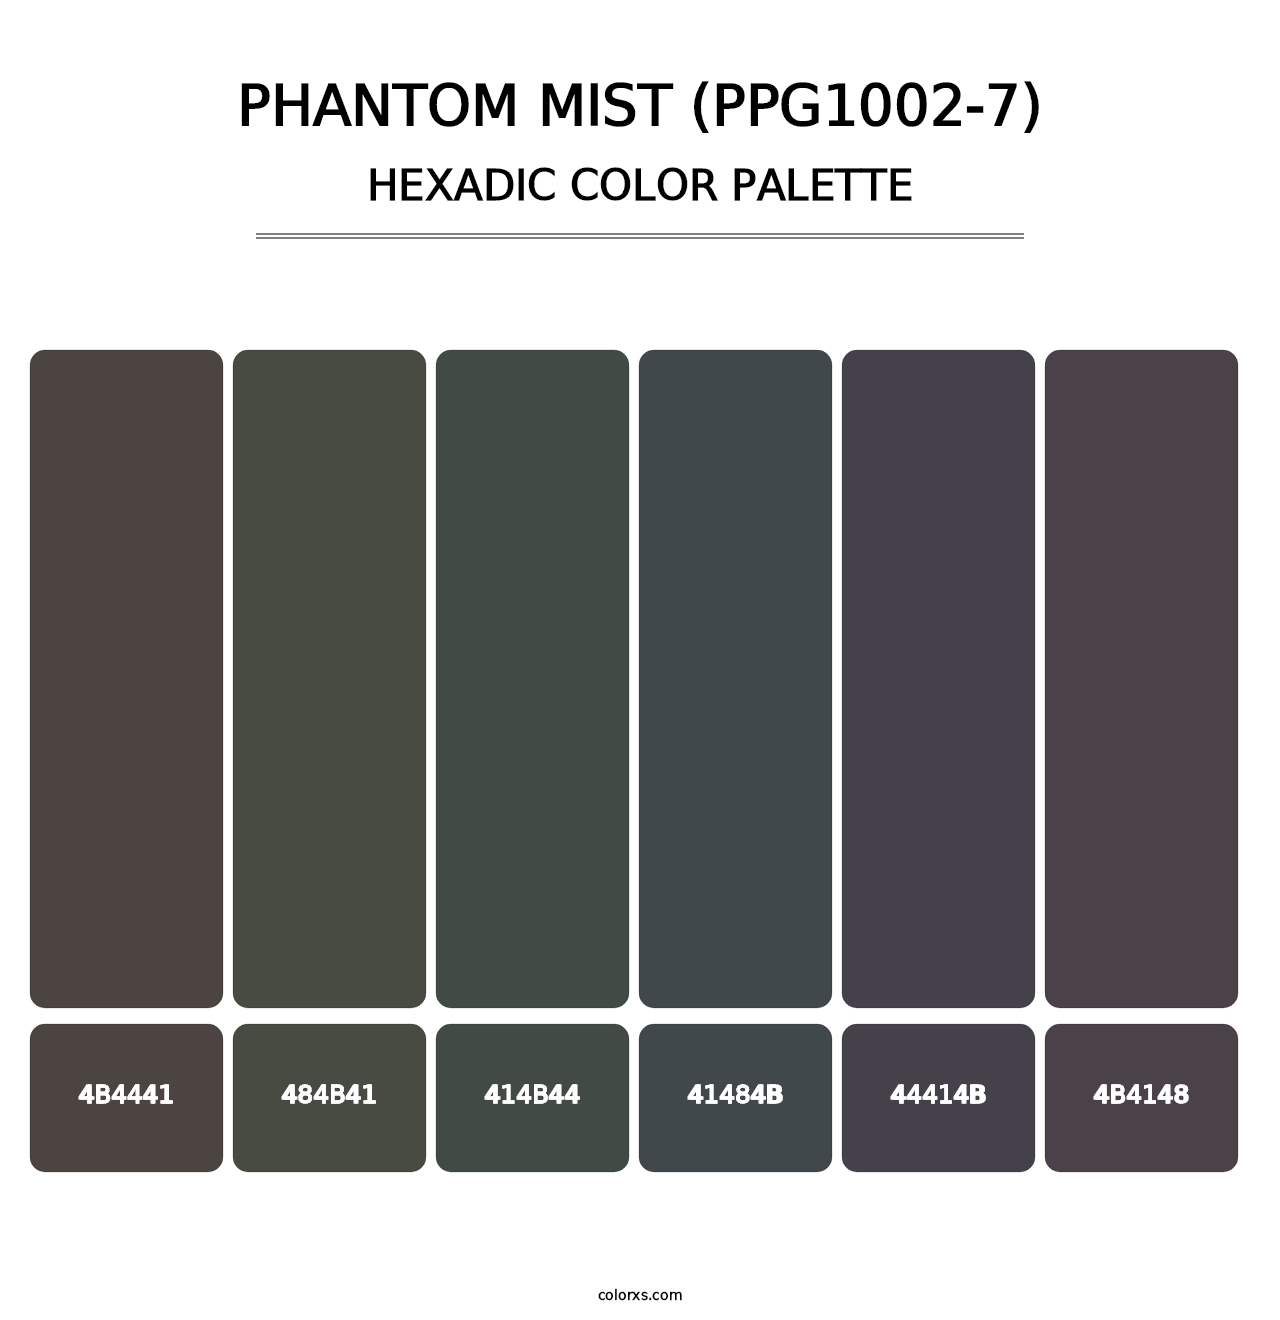 Phantom Mist (PPG1002-7) - Hexadic Color Palette